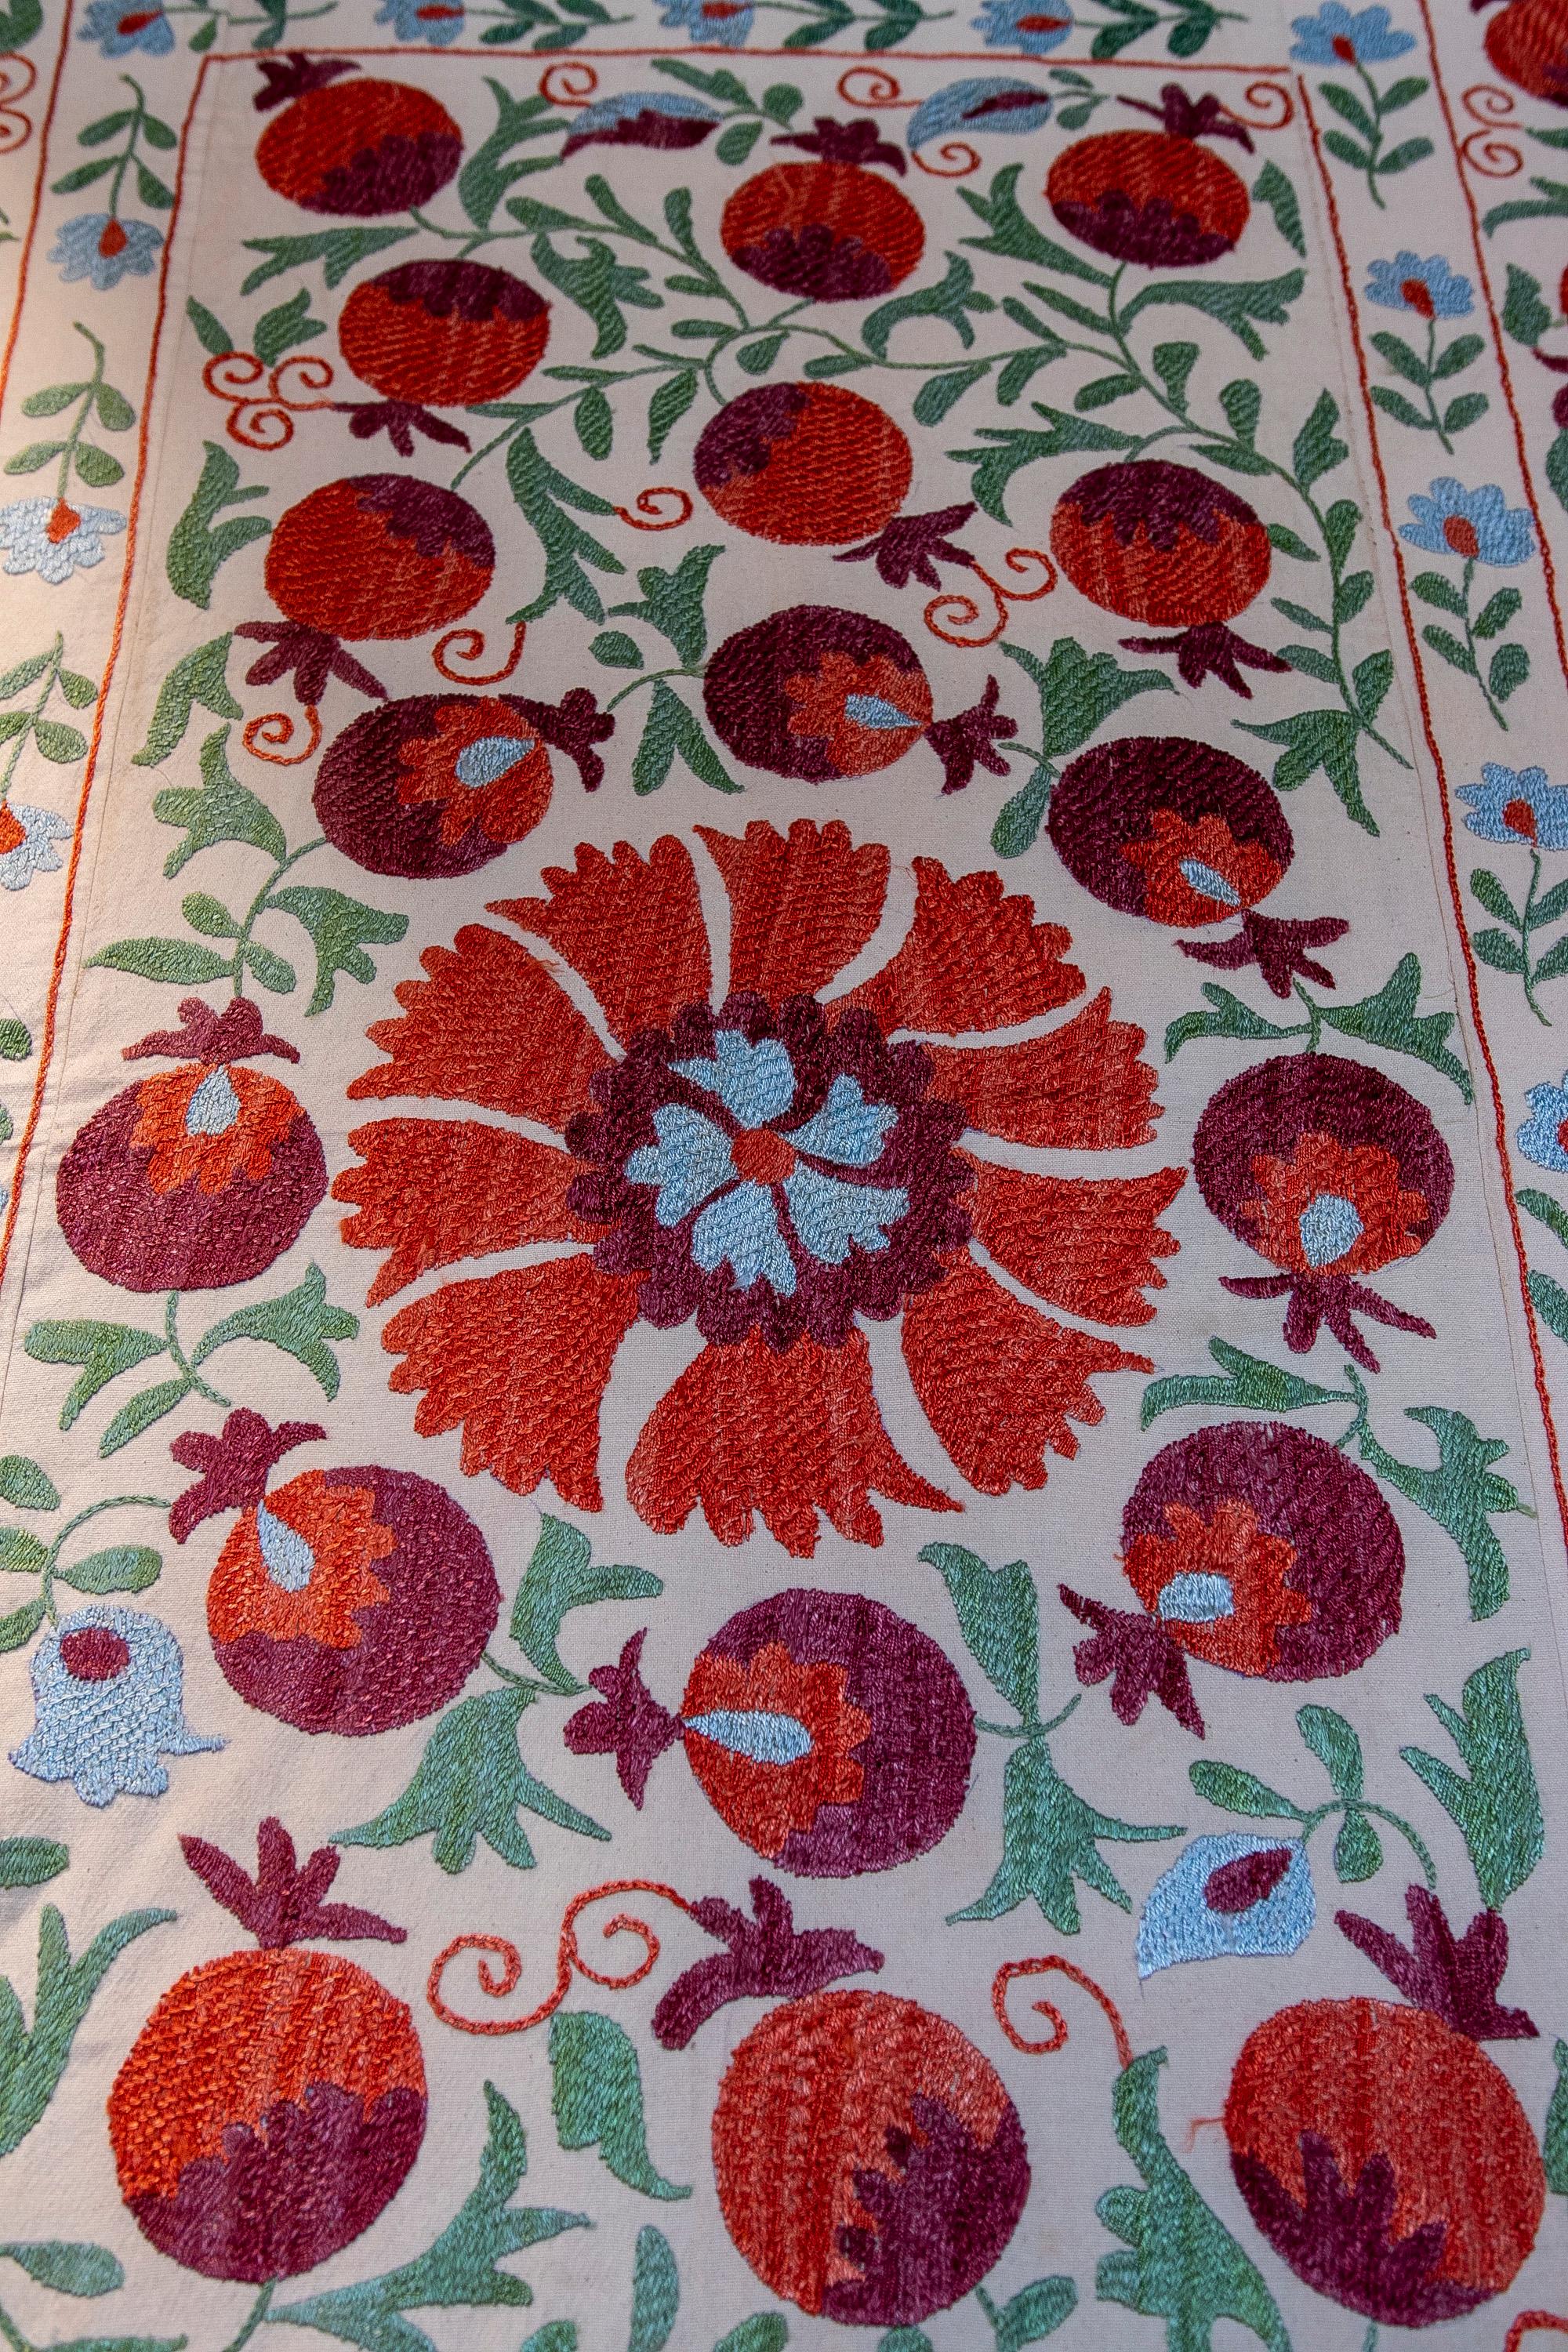 1970s Uzbekistan Hand Stitched Fabric Known as Suzani  1